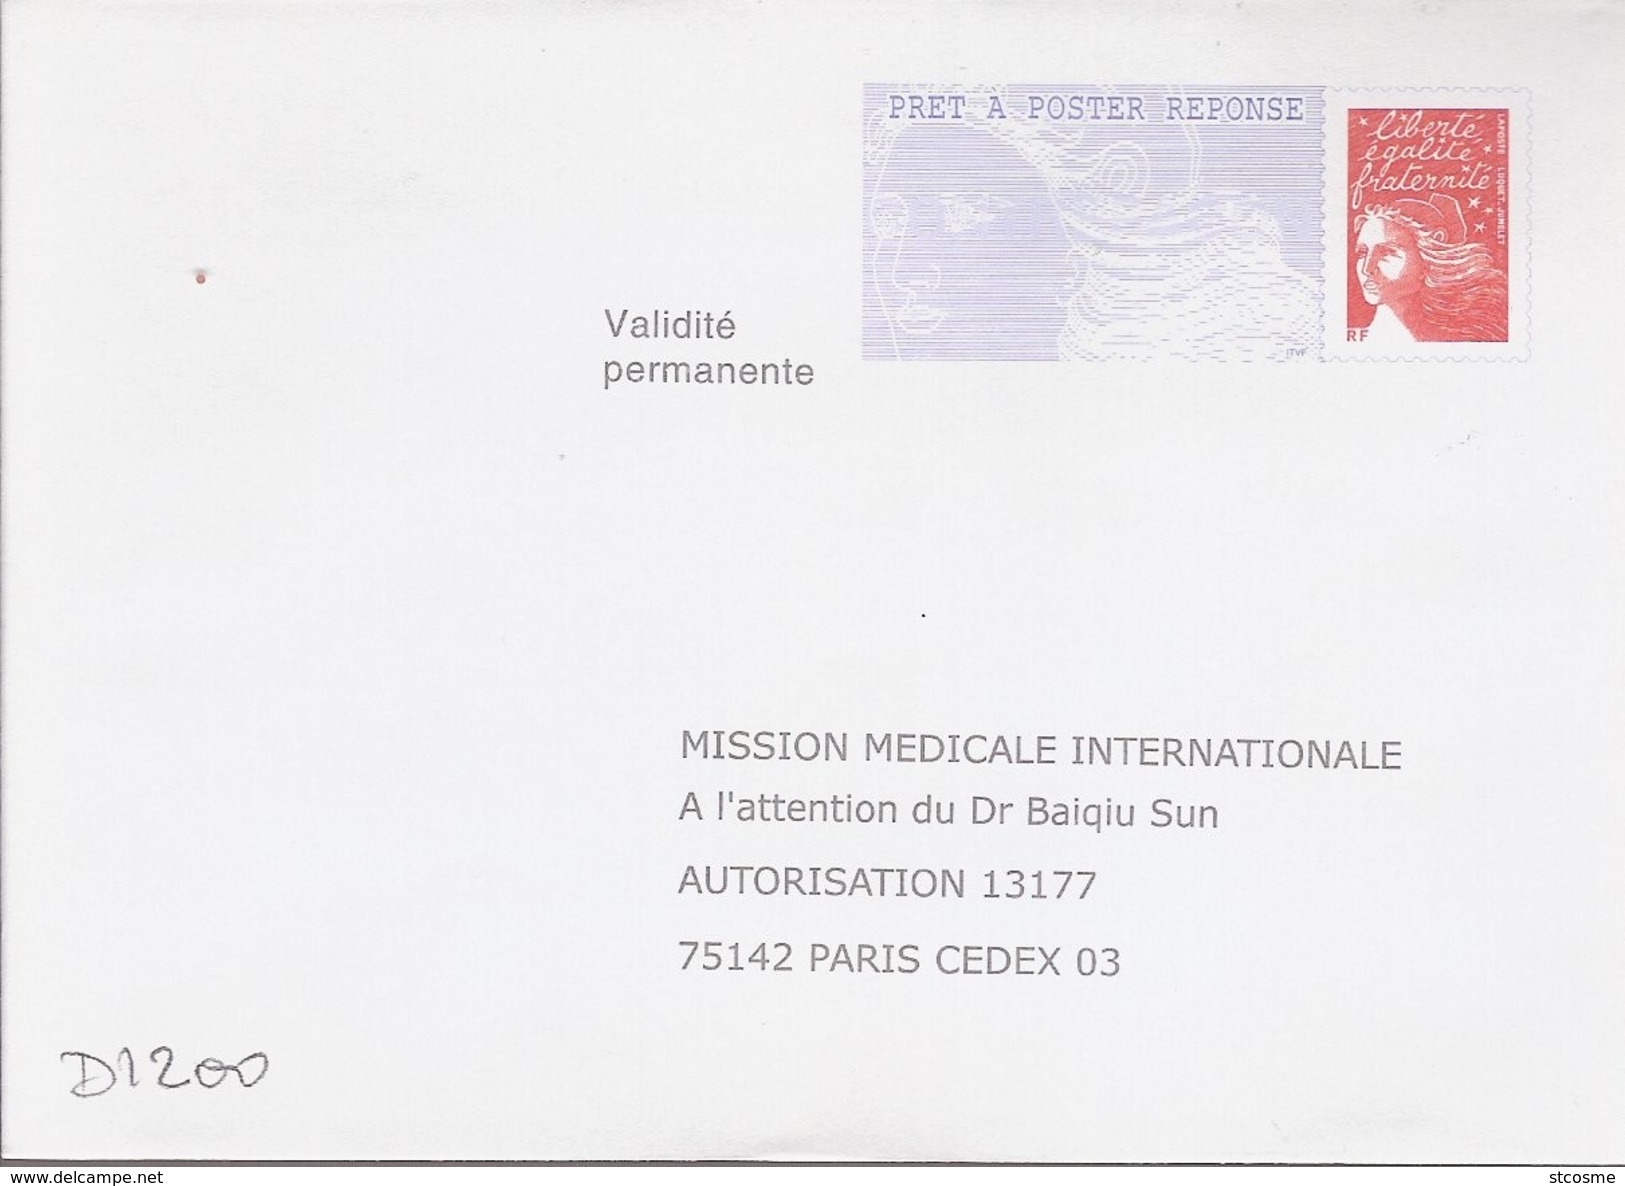 D1200 Entier / Stationery / PSE - PAP Réponse Luquet - Mission Médicale Internationale - N° D'agrément 0204500 - Listos Para Enviar: Respuesta /Luquet